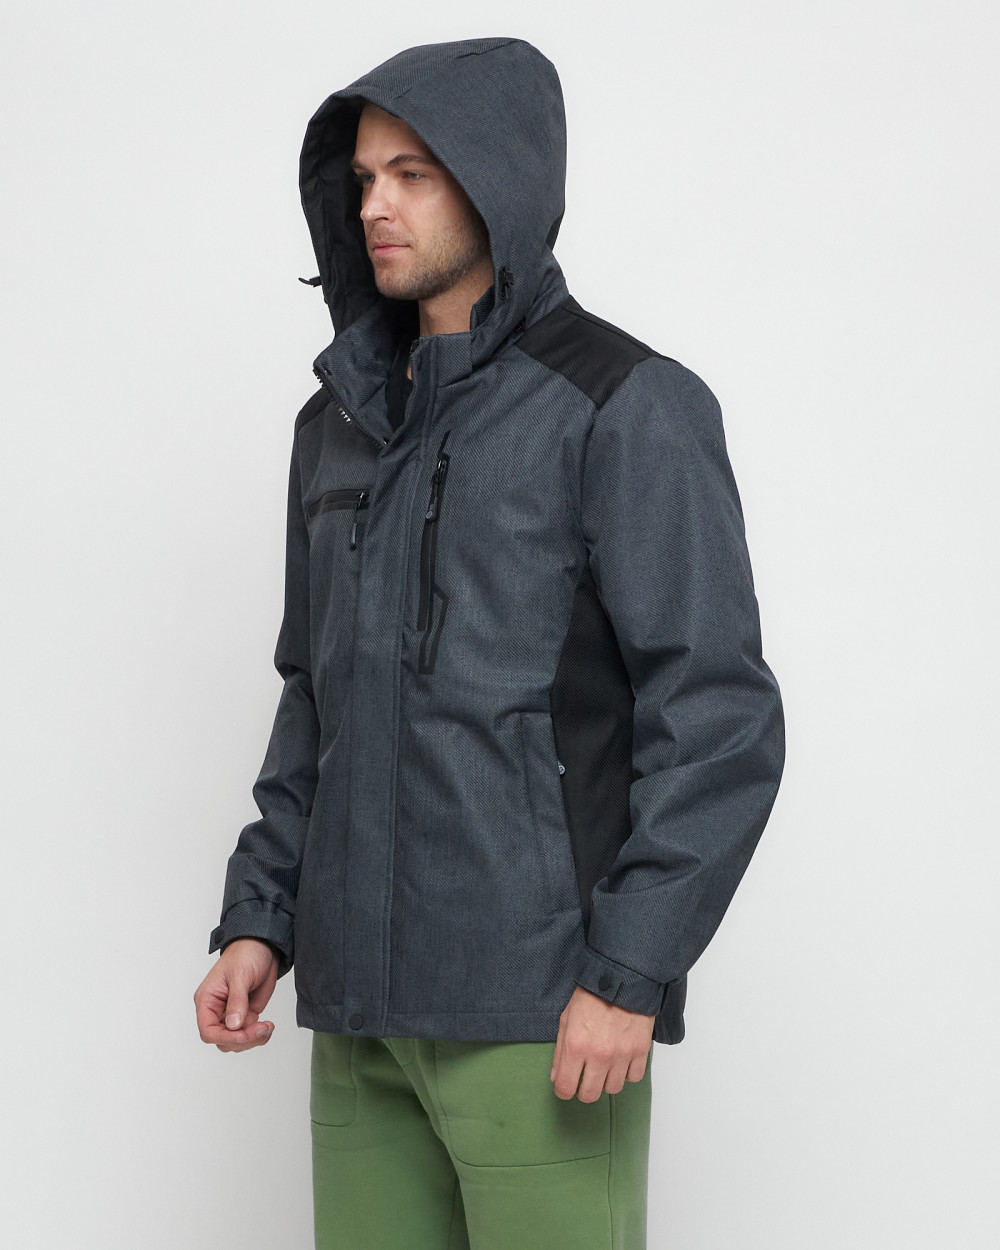 Купить куртку мужскую спортивную весеннюю оптом от производителя недорого в Москве 6652TC 1